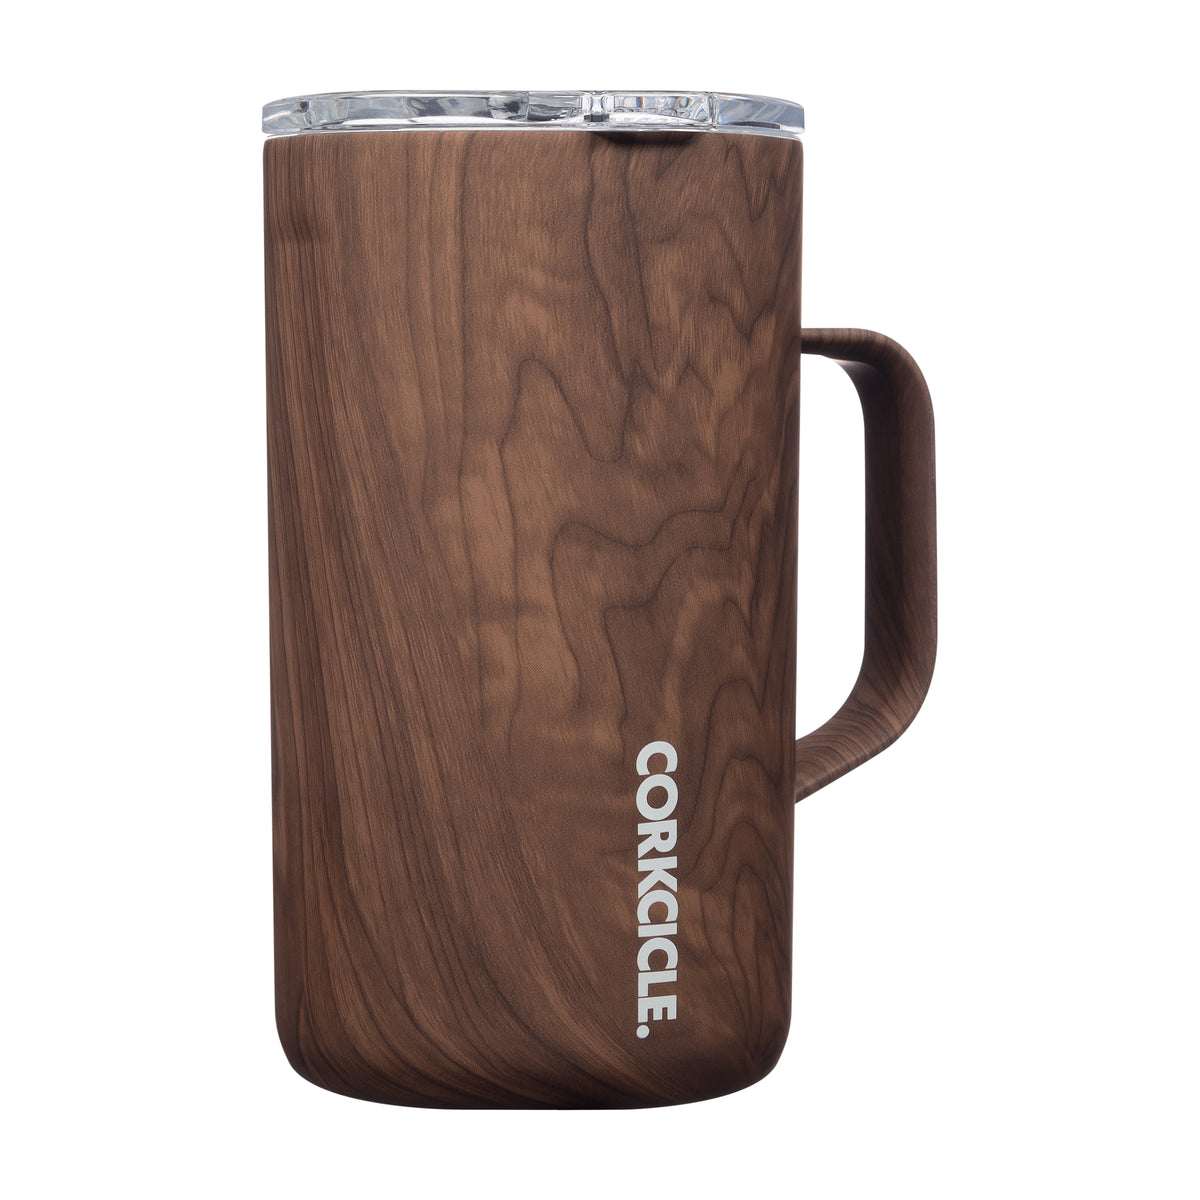 CORKCICLE - Mug Walnut Wood 22 oz